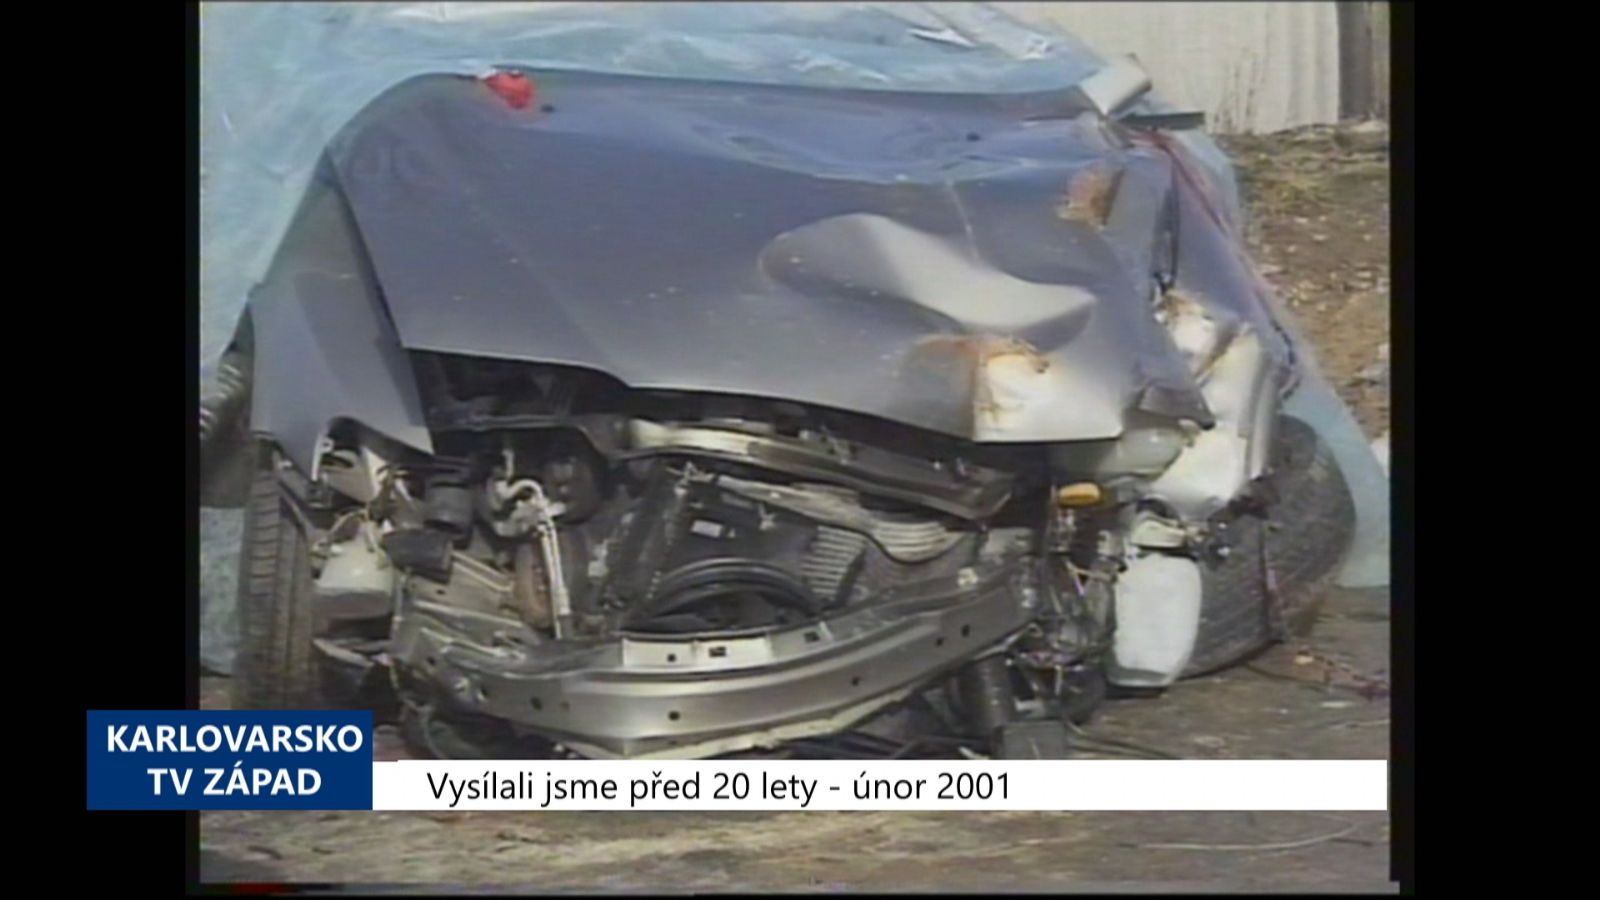 2001 – Chebsko: Loni při dopravních nehodách zemřelo 19 osob (TV Západ)